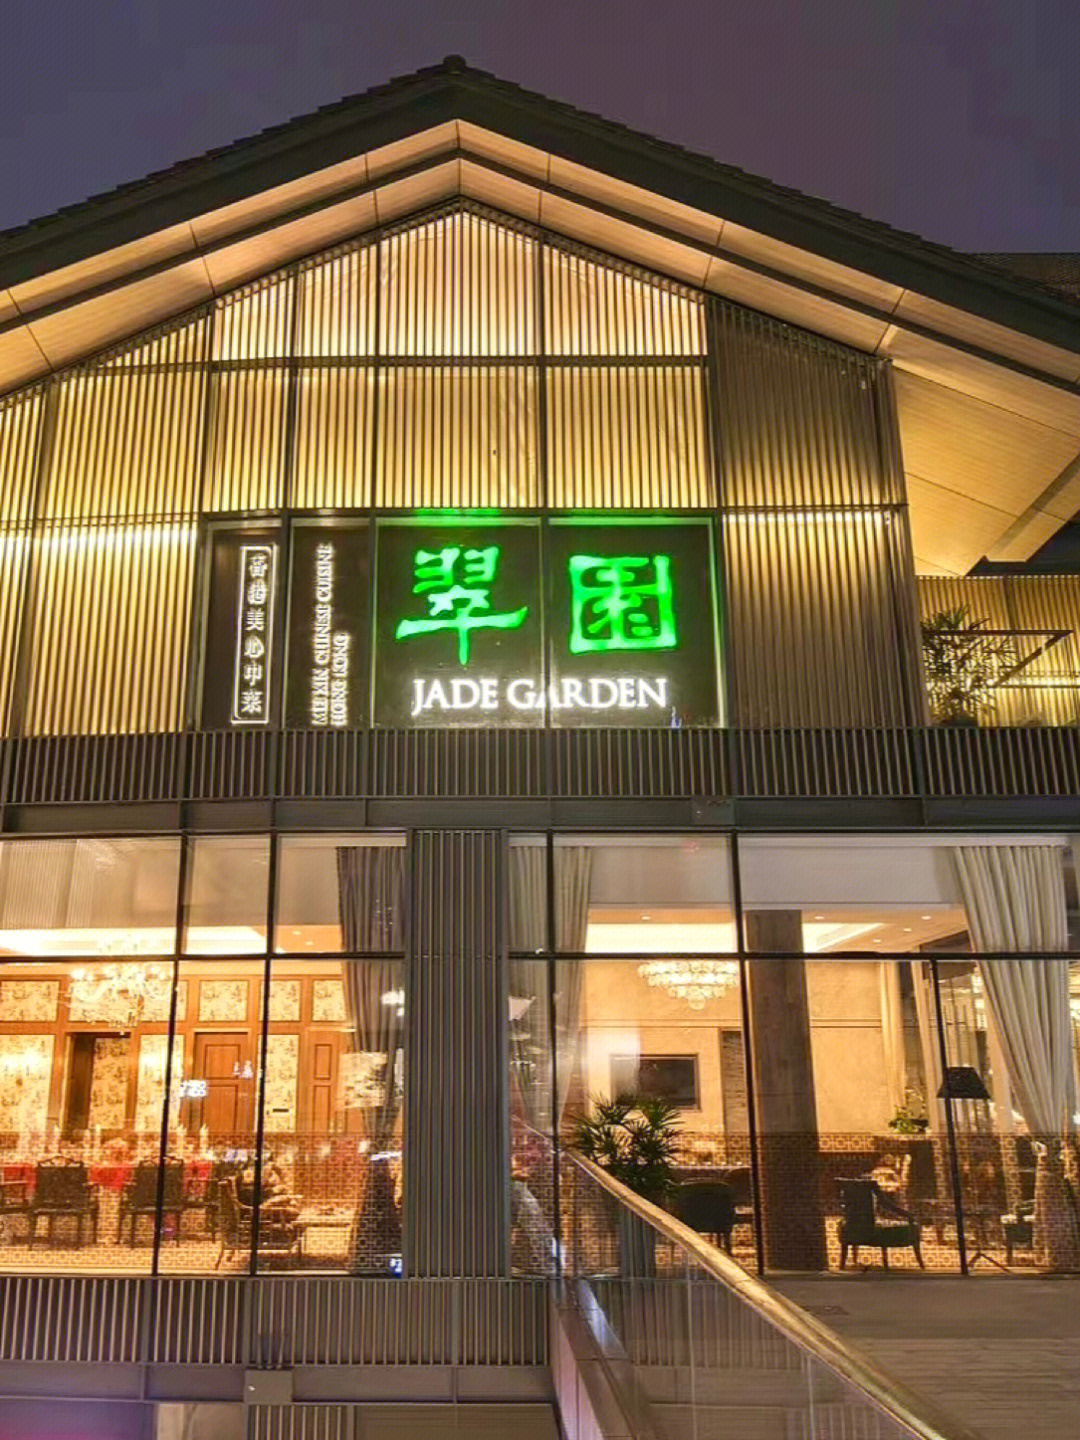 太古里「翠园」香港米其林一星称号的明星餐厅